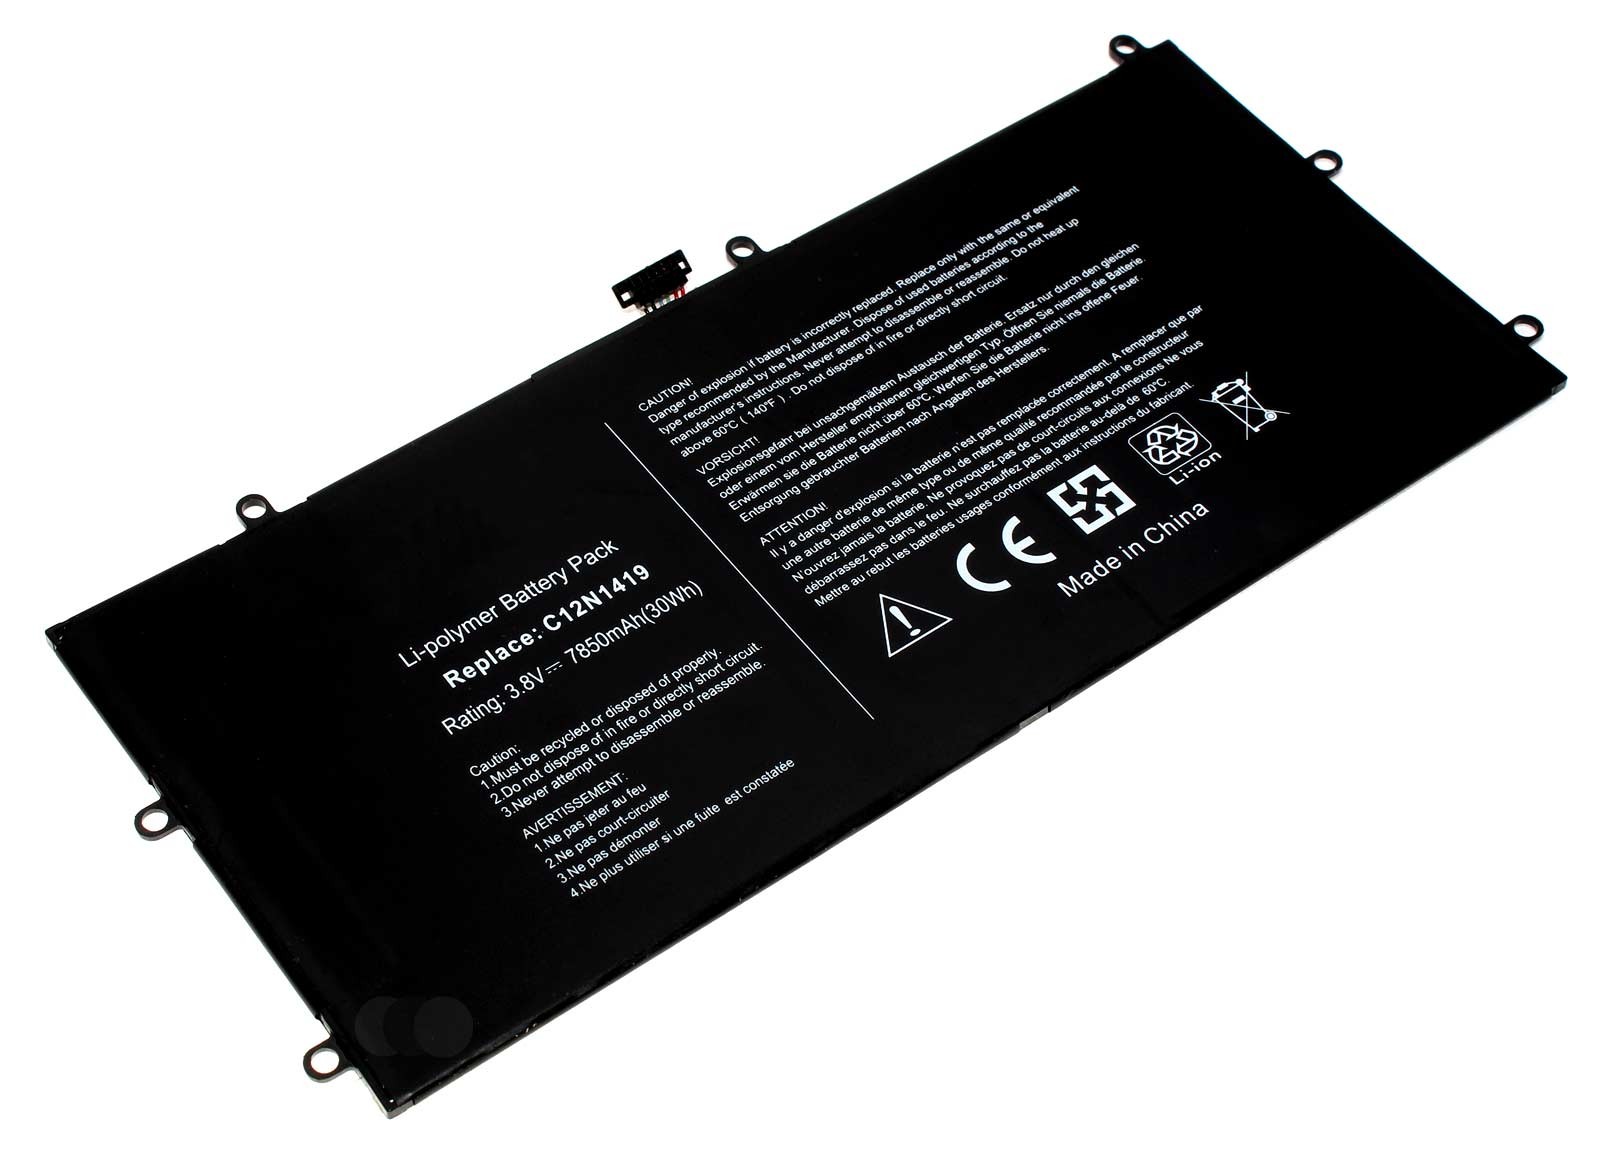 Alternativer Lithium-Polymer Akku für Asus Transformer Book T100 Chi Series Convertible Tablet-PC mit 3,8 Volt und 7850mAh Kapazität, ersetzt den original Akku C12N1419